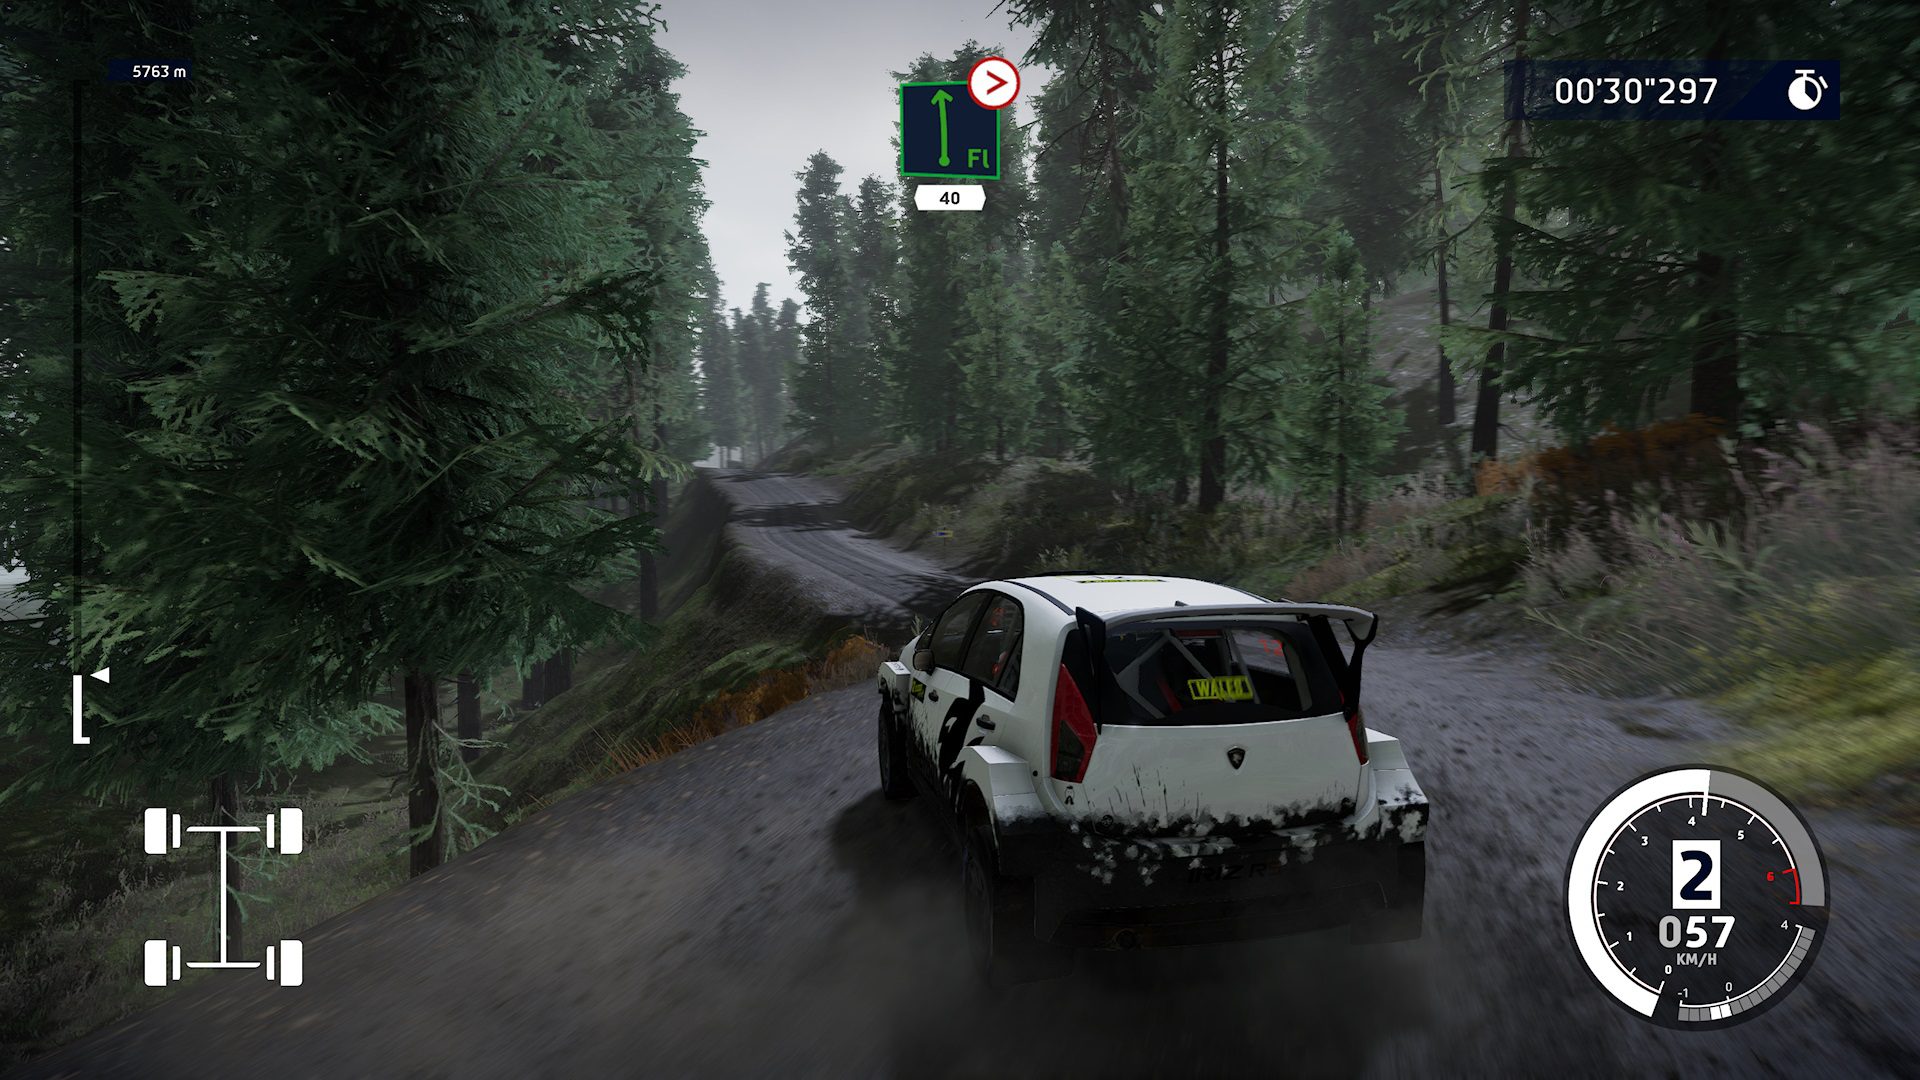 Análisis de WRC 10 para Xbox Series X - KT Racing vuelve con WRC 10 en la entrega más completa y mejor acabada de la historia de la franquicia.